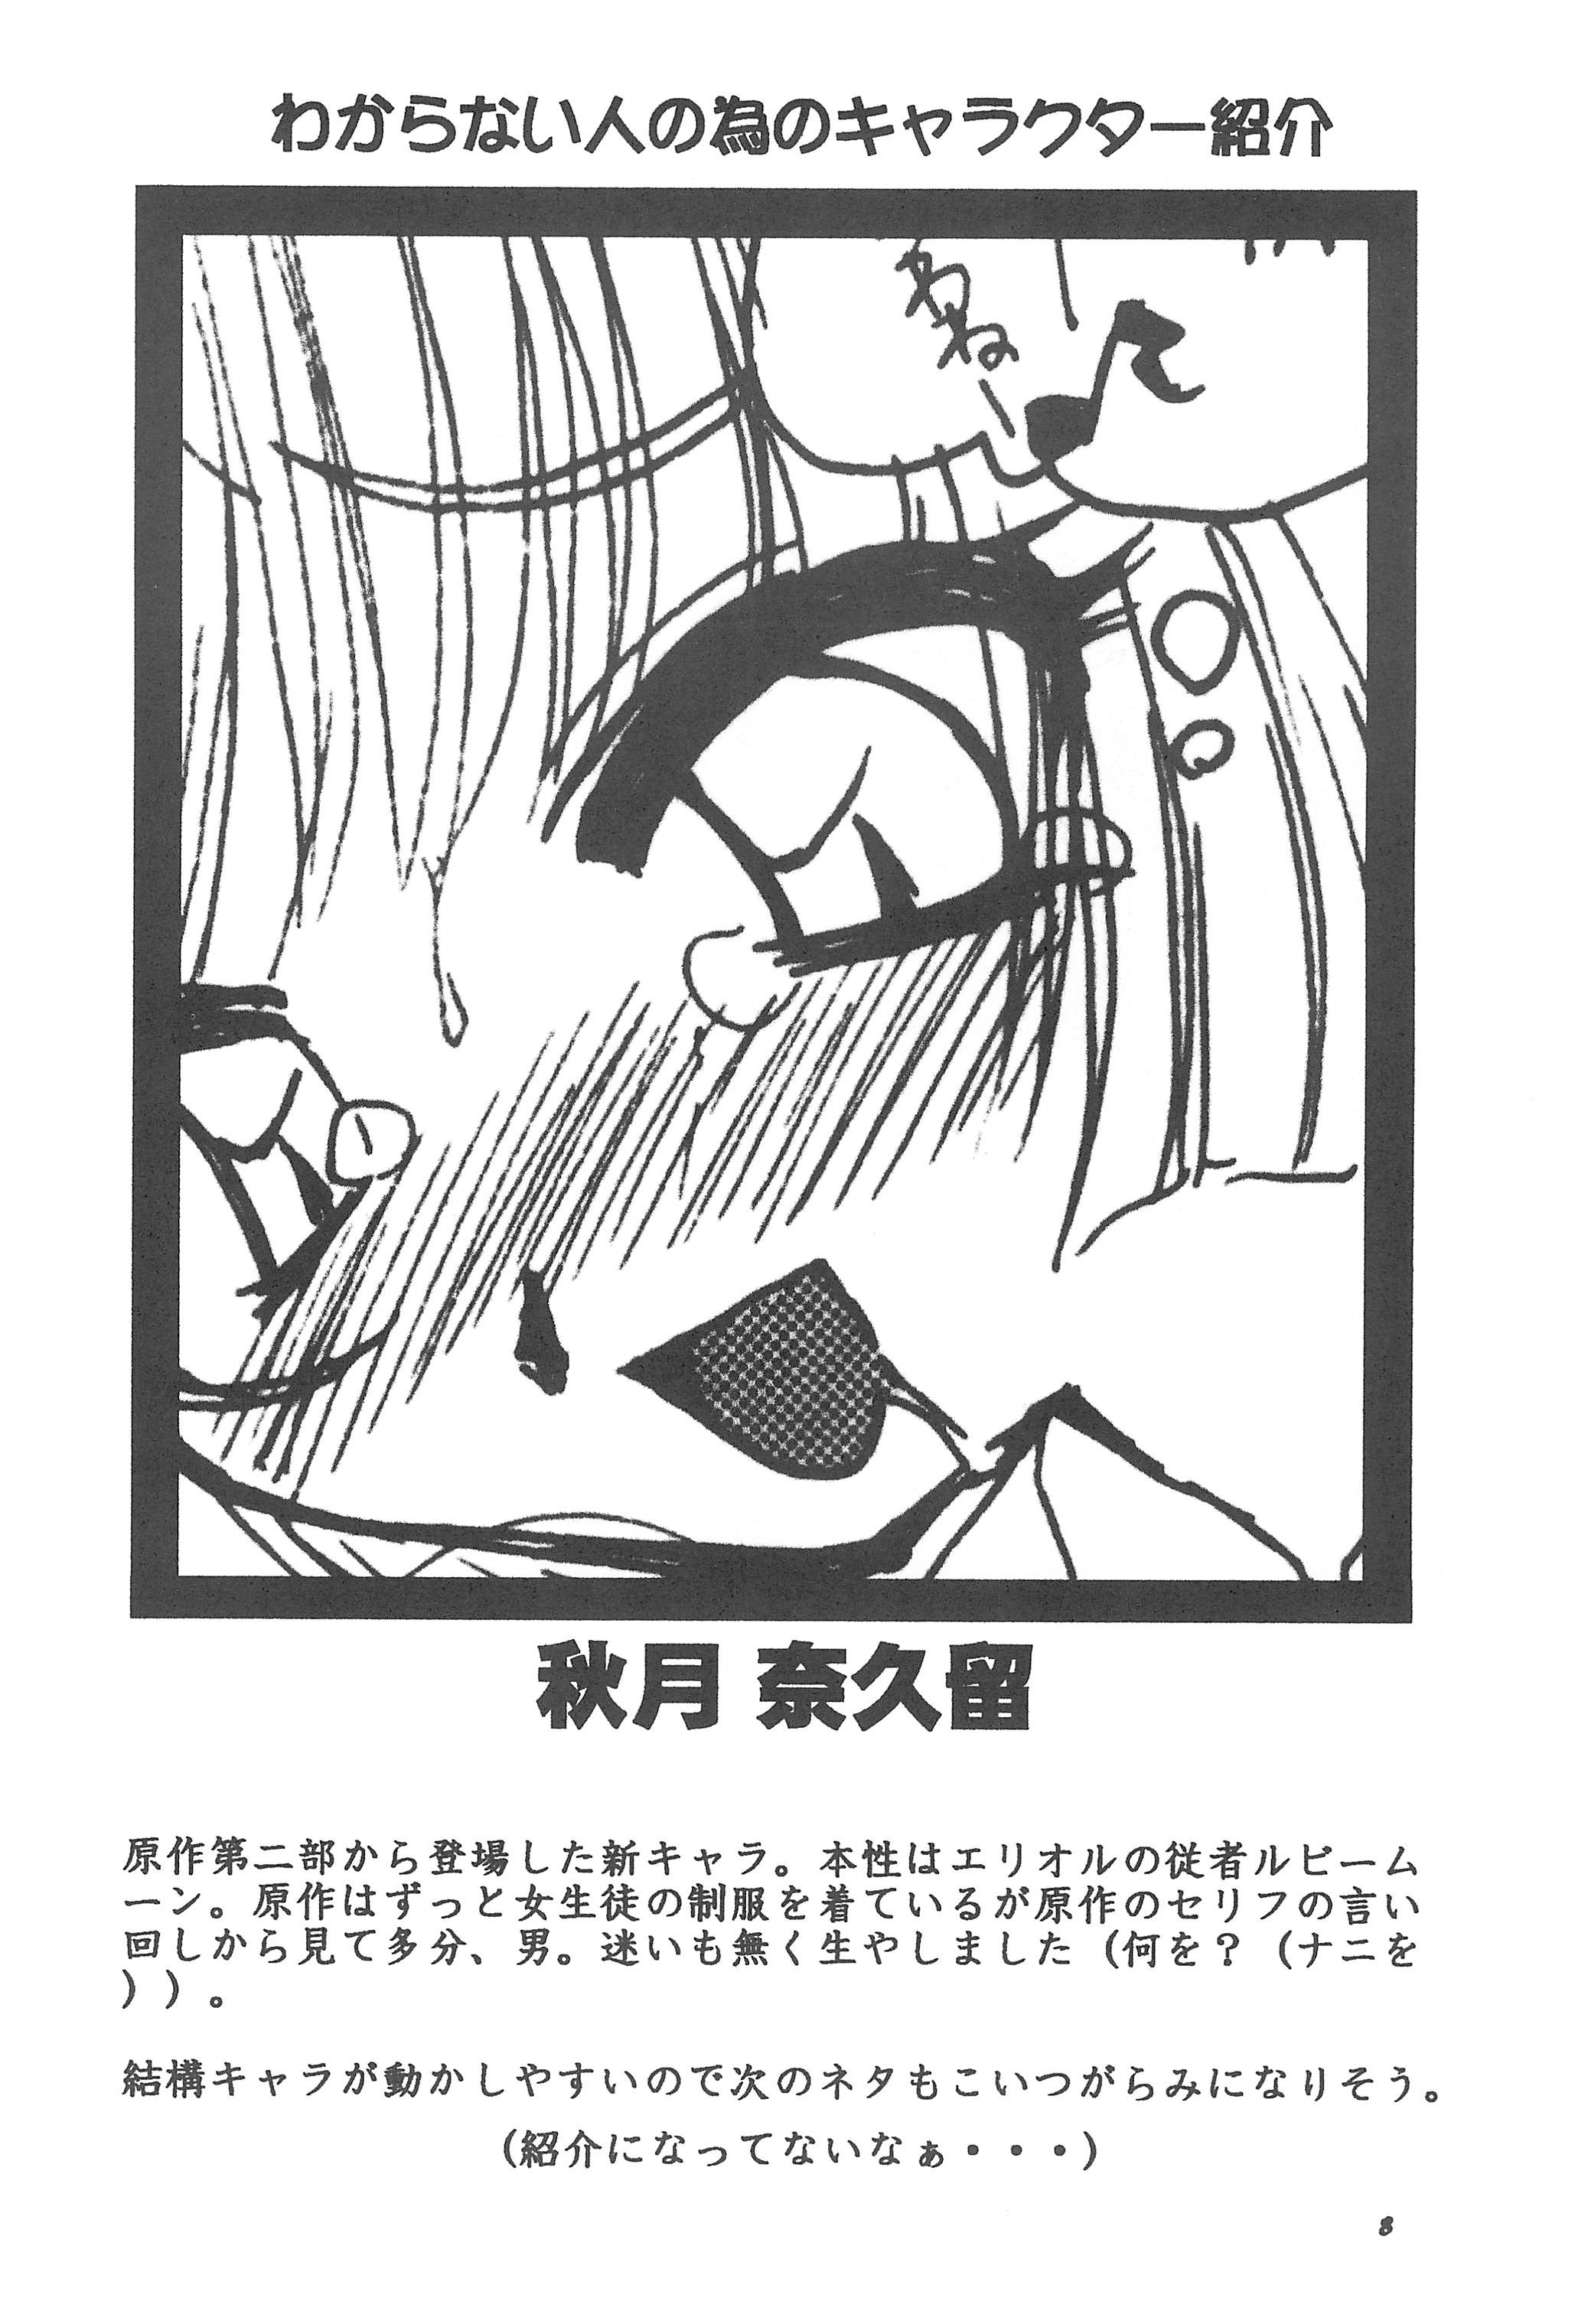 [忍ノ館 (いわまよしき)] JEWEL BOX 7 -SECOND EDITION- (カードキャプターさくら) [1999年7月31日]